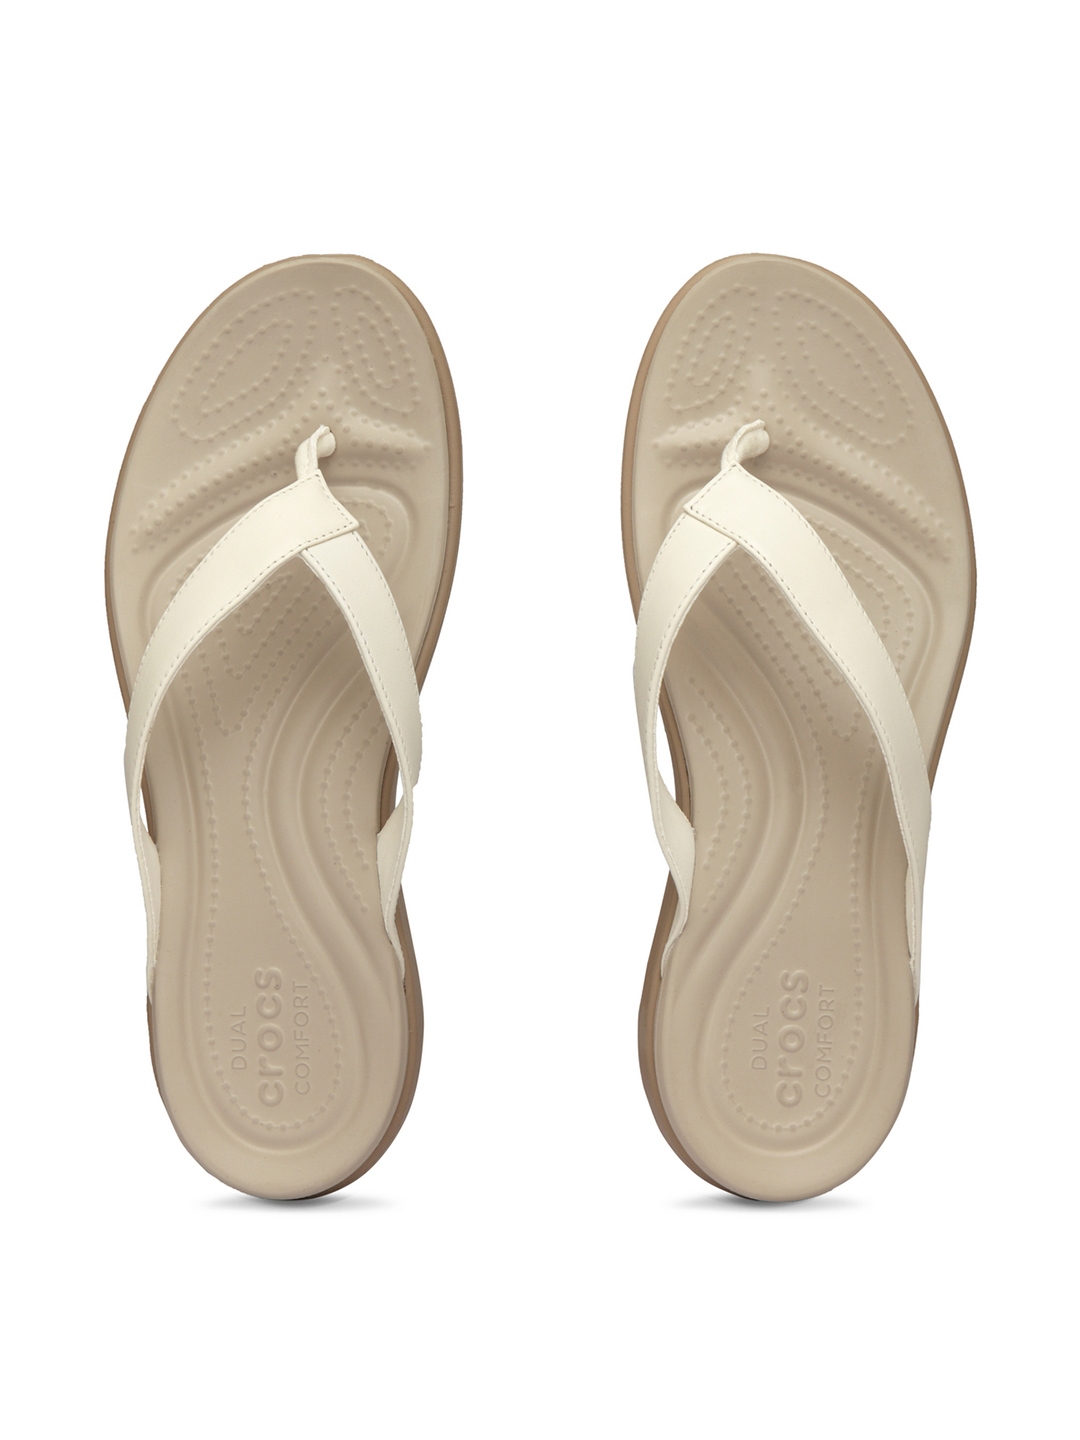 Buy Crocs Capri Women Beige Solid Flip Flops - Flip Flops for Women ...